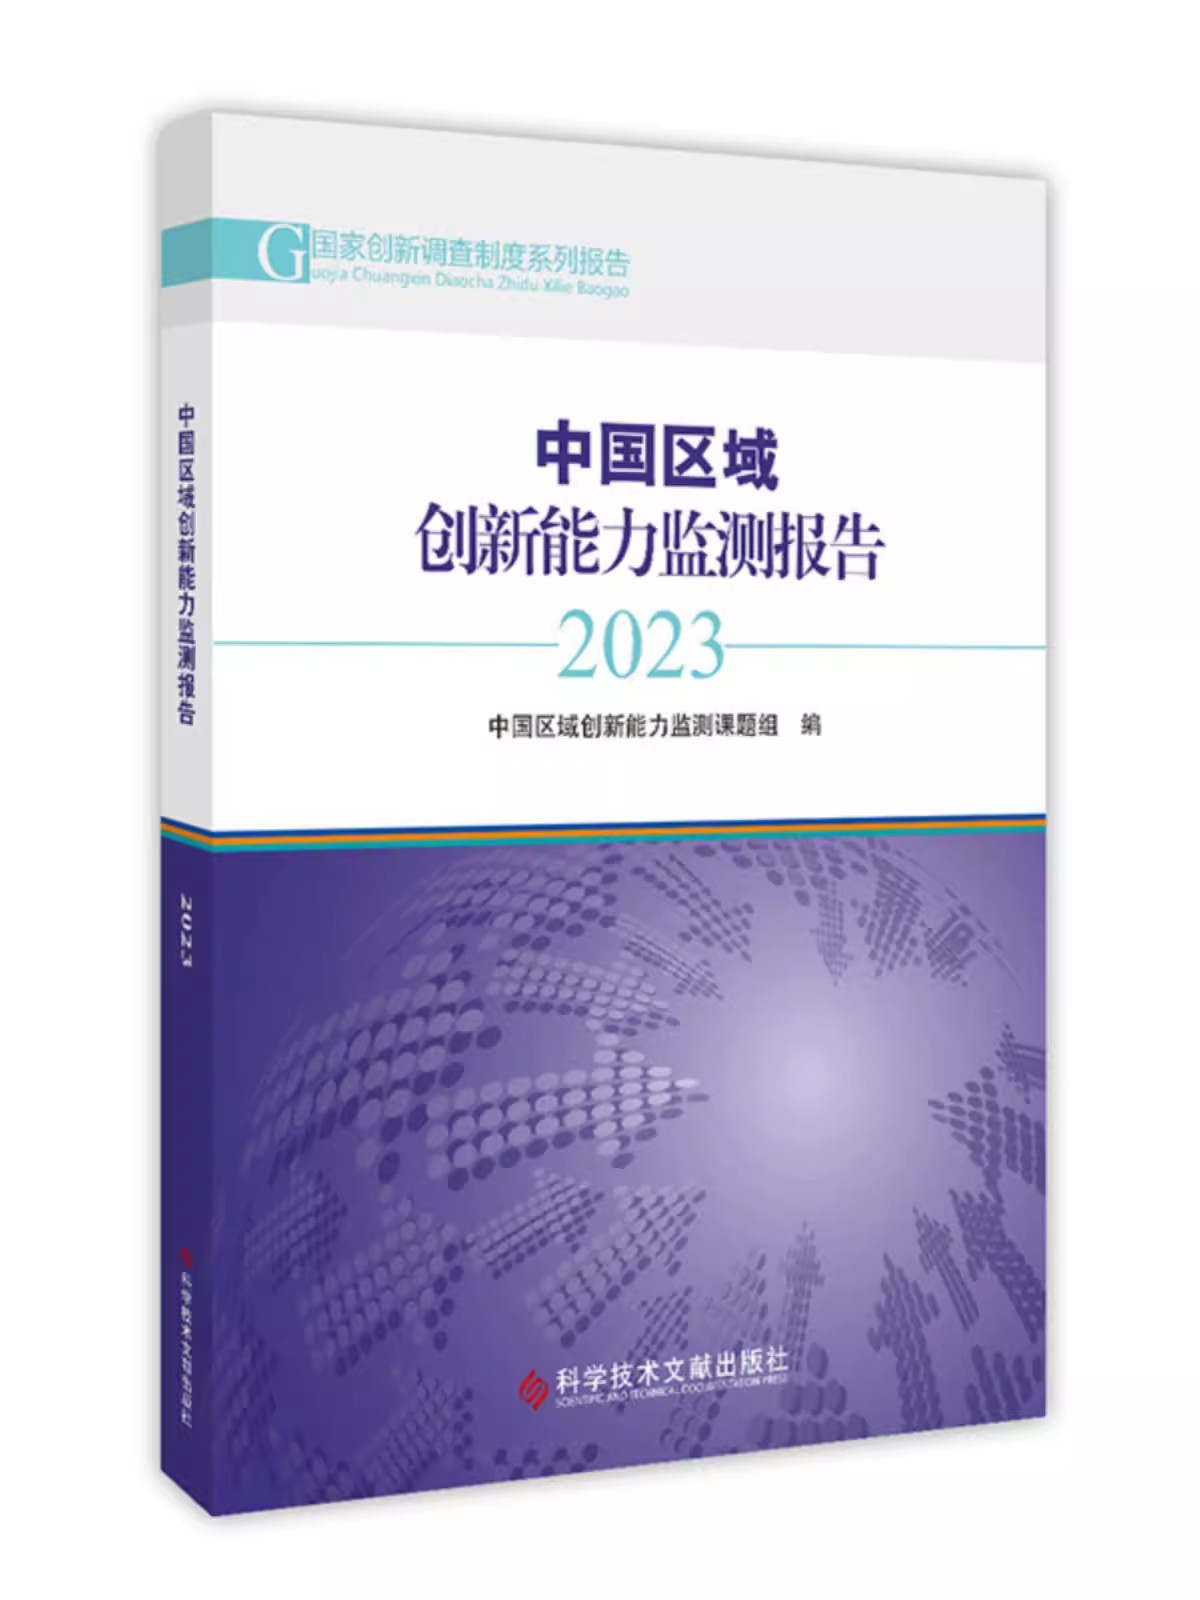 中国区域创新能力监测报告2023 中国区域创新能力监测课题组 科学技术文献出版社9787523506035